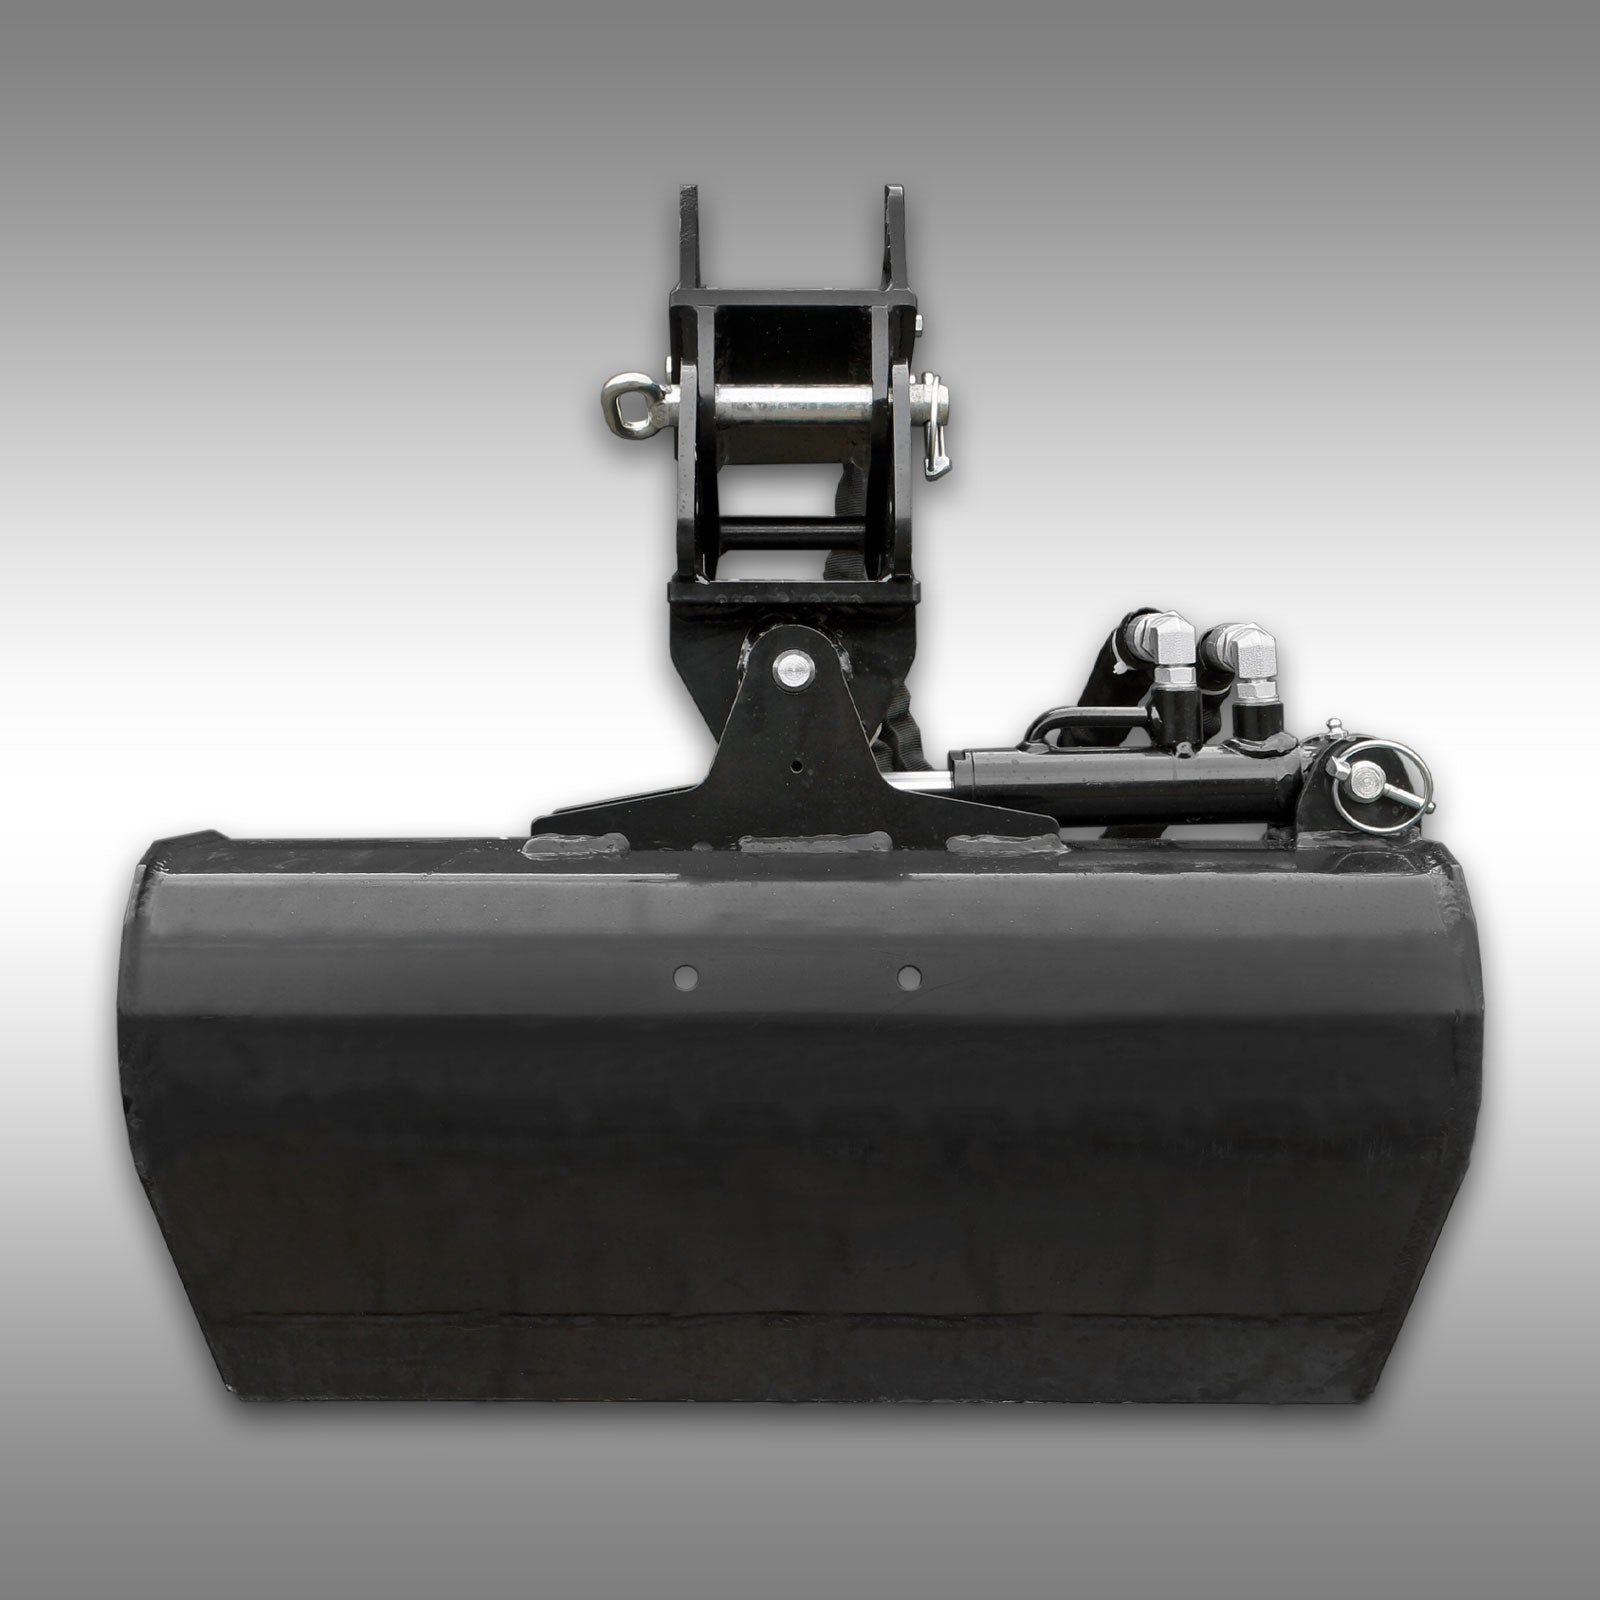 Schaufel 600mm ±45° schwenkbar für Minibagger Jansen MB-1500+MB-1000